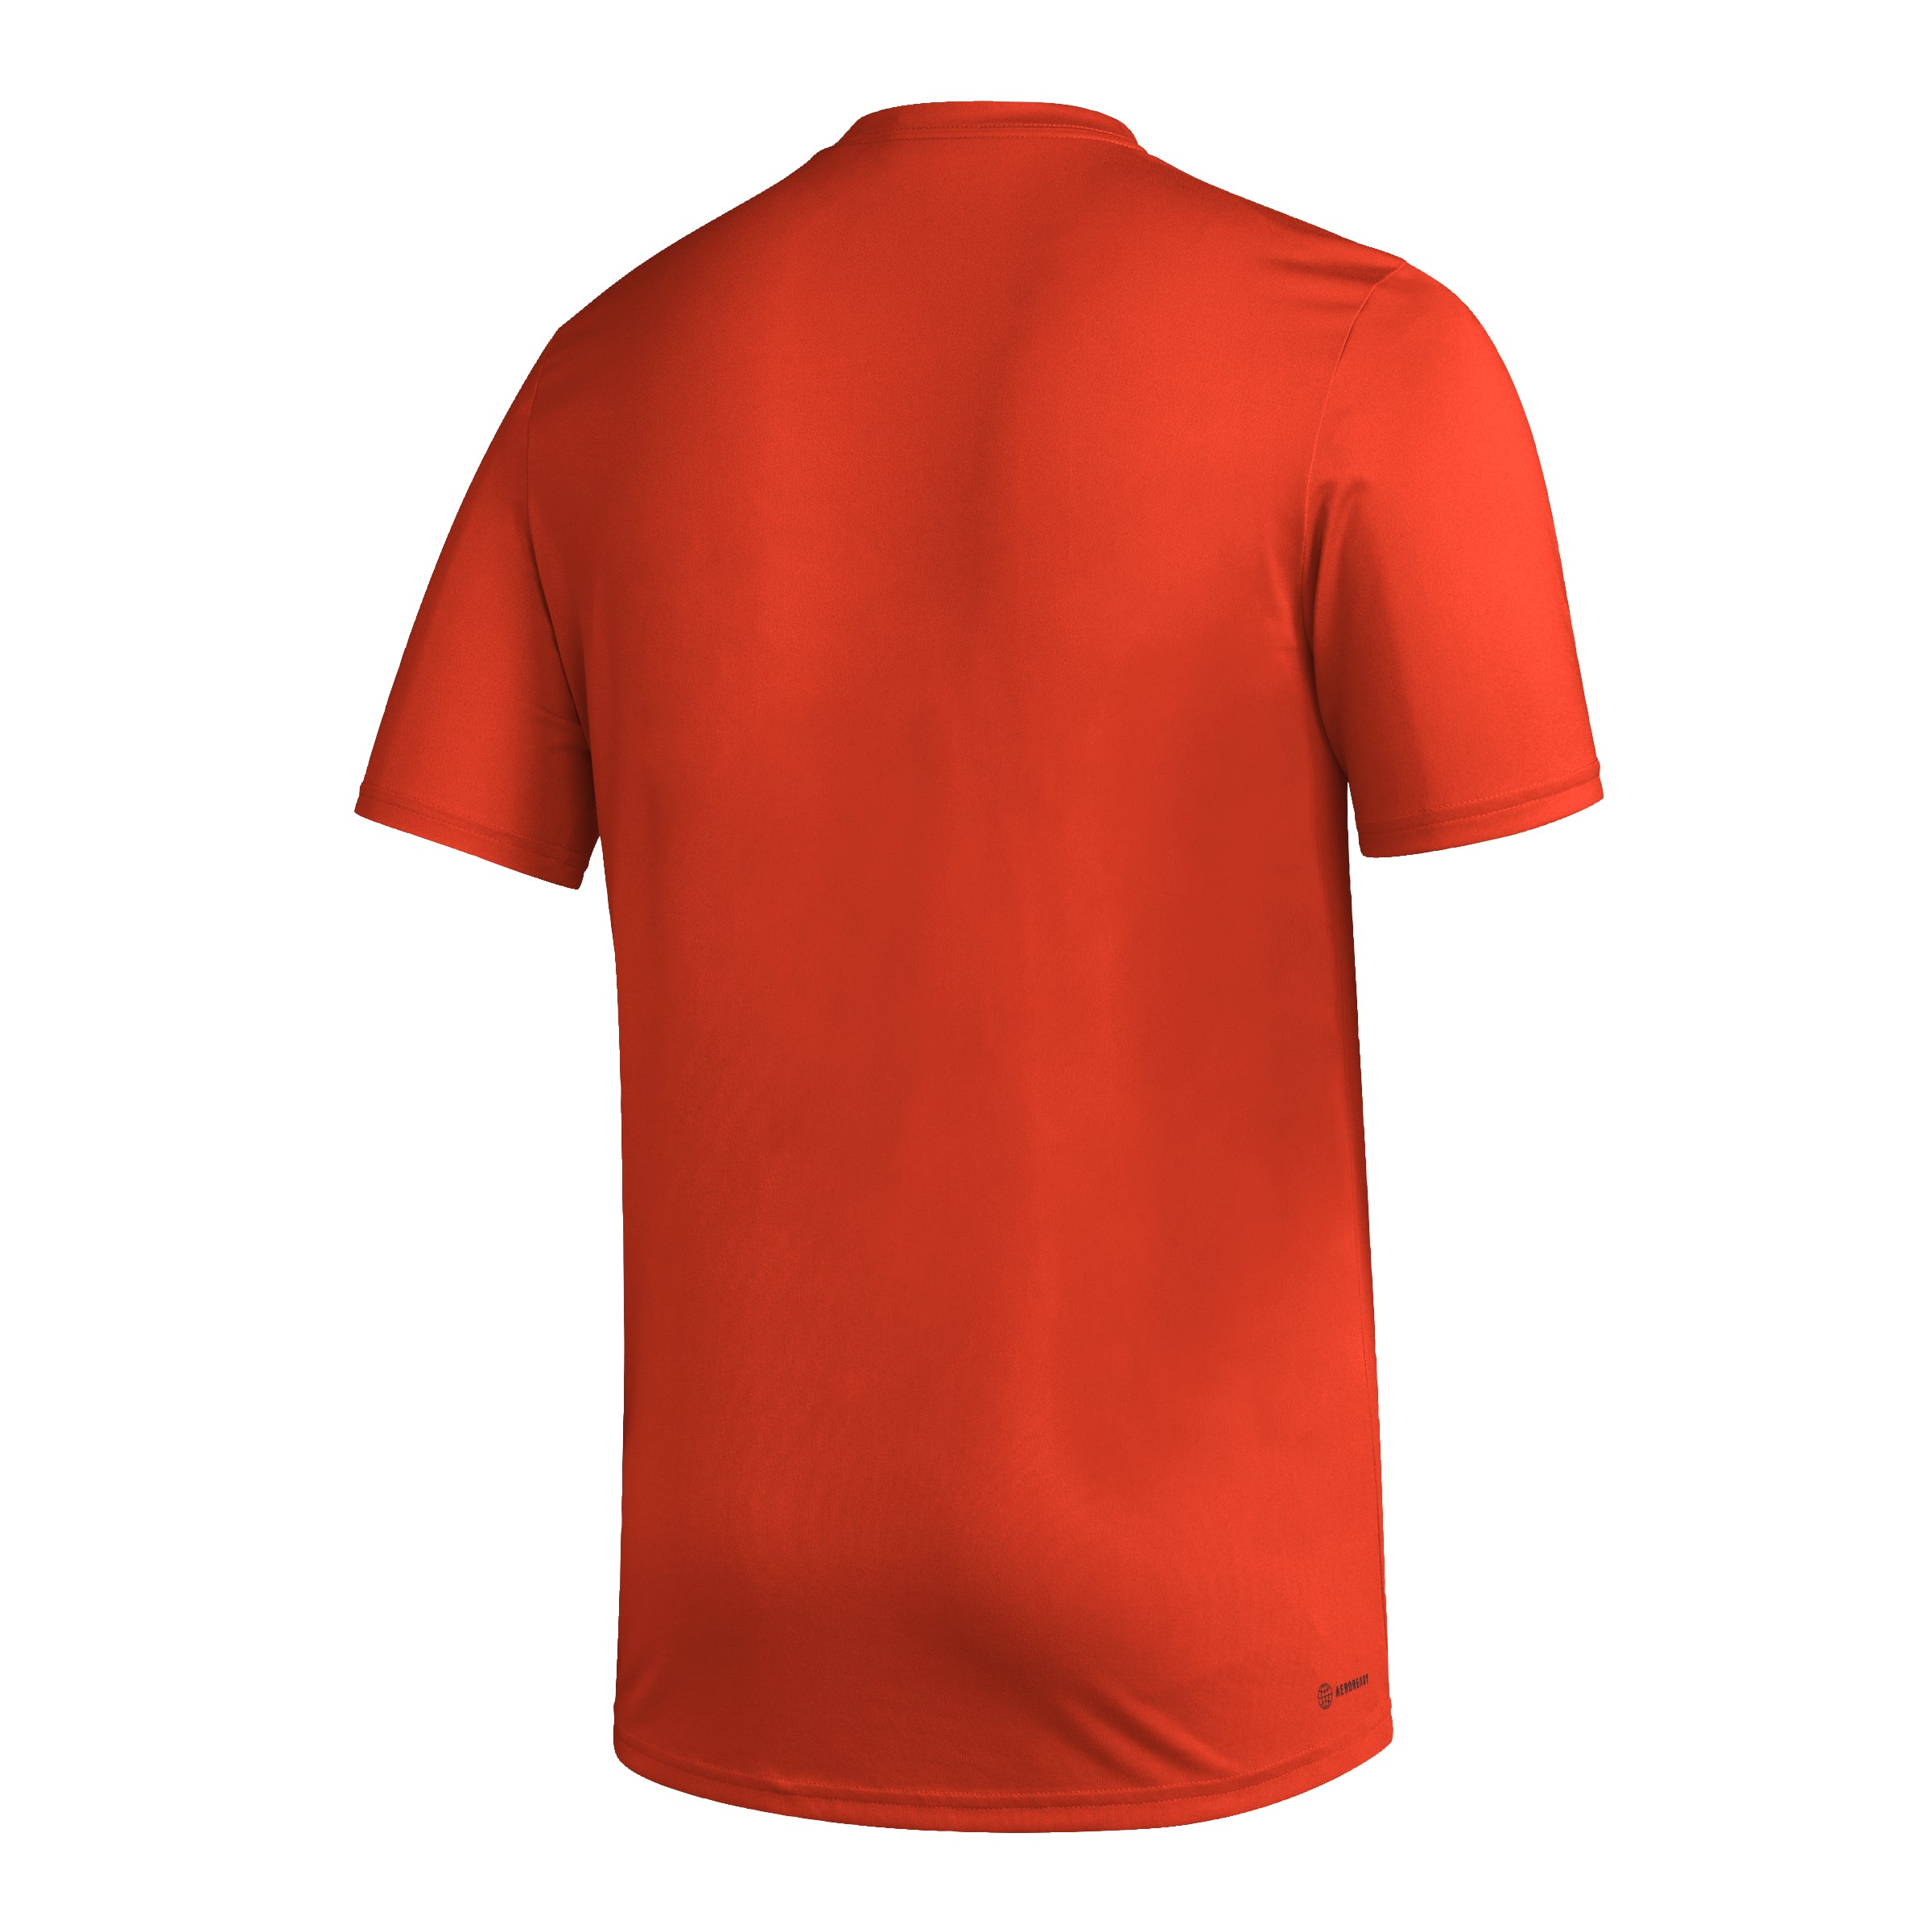 Miami Hurricanes adidas 'Miami Canes' Aeroready Pregame T-Shirt - Orange